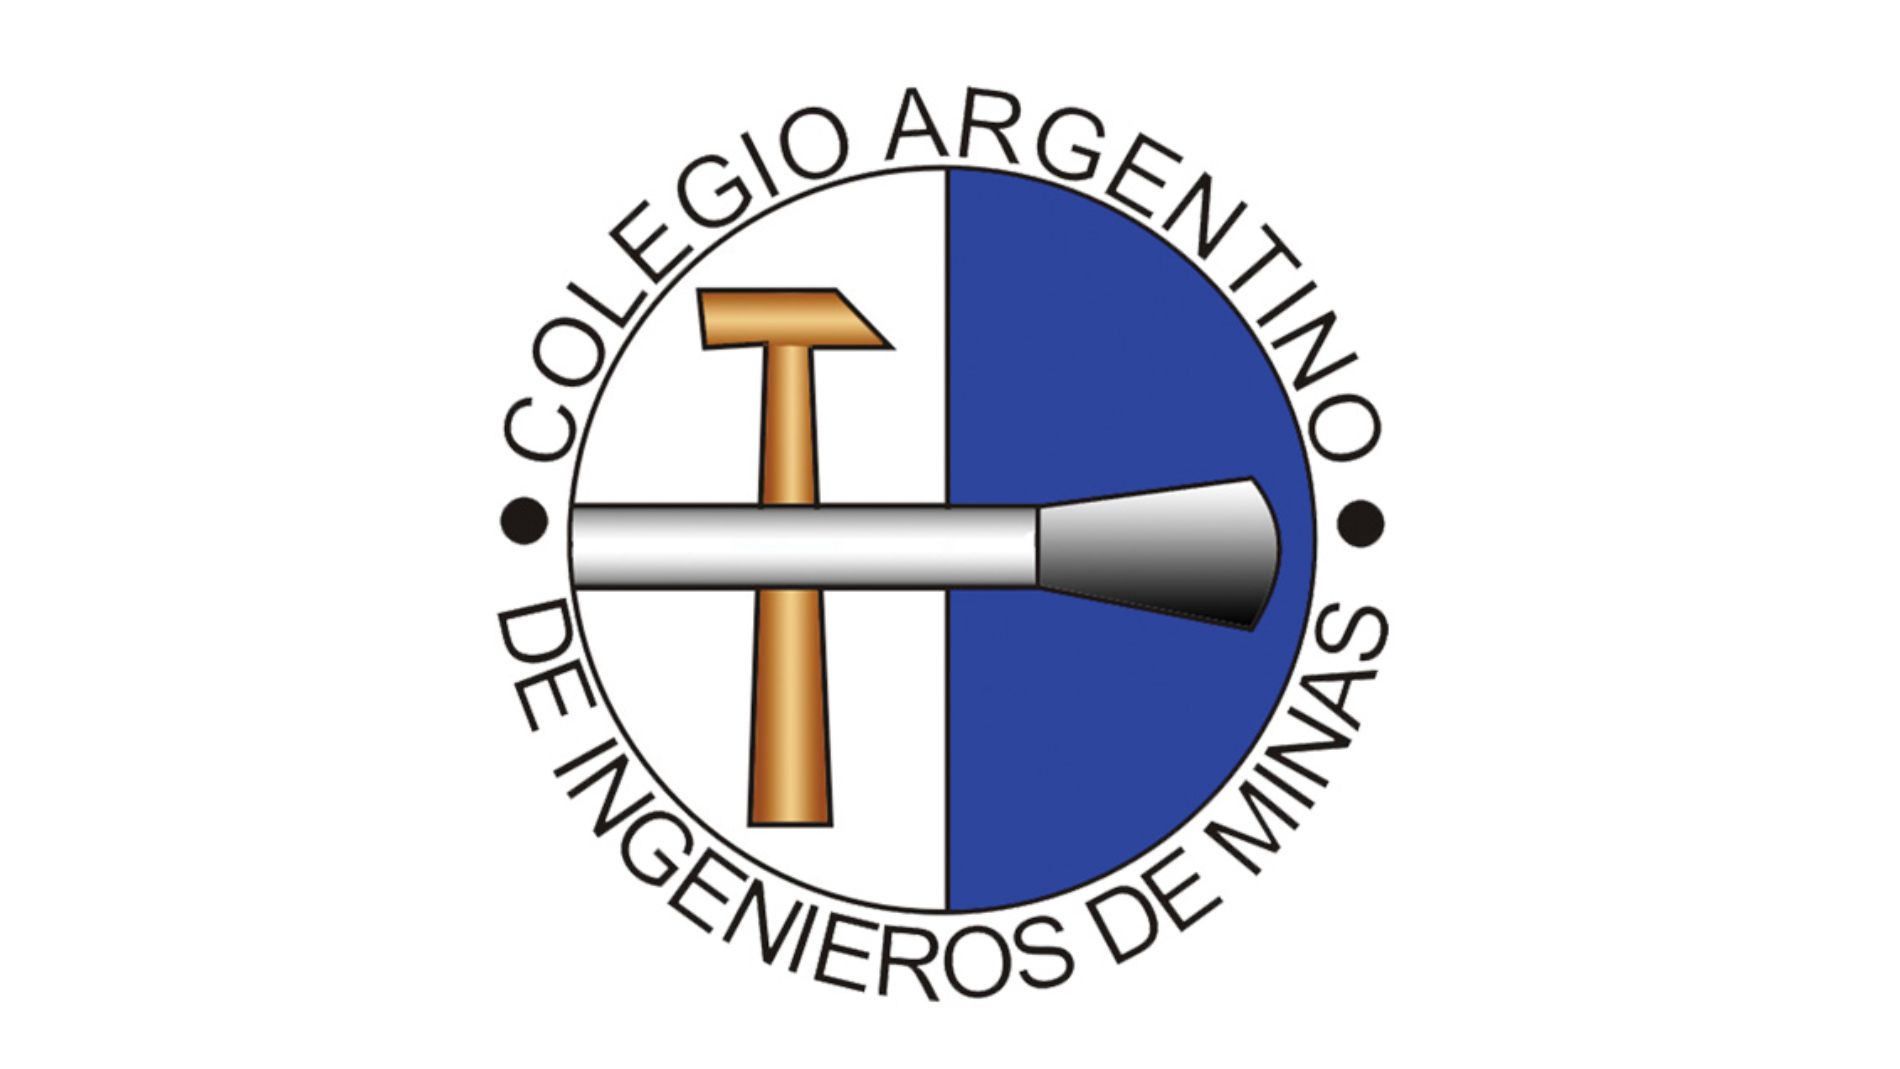 El rol de la Ingeniería de Minas en el desarrollo minero argentino